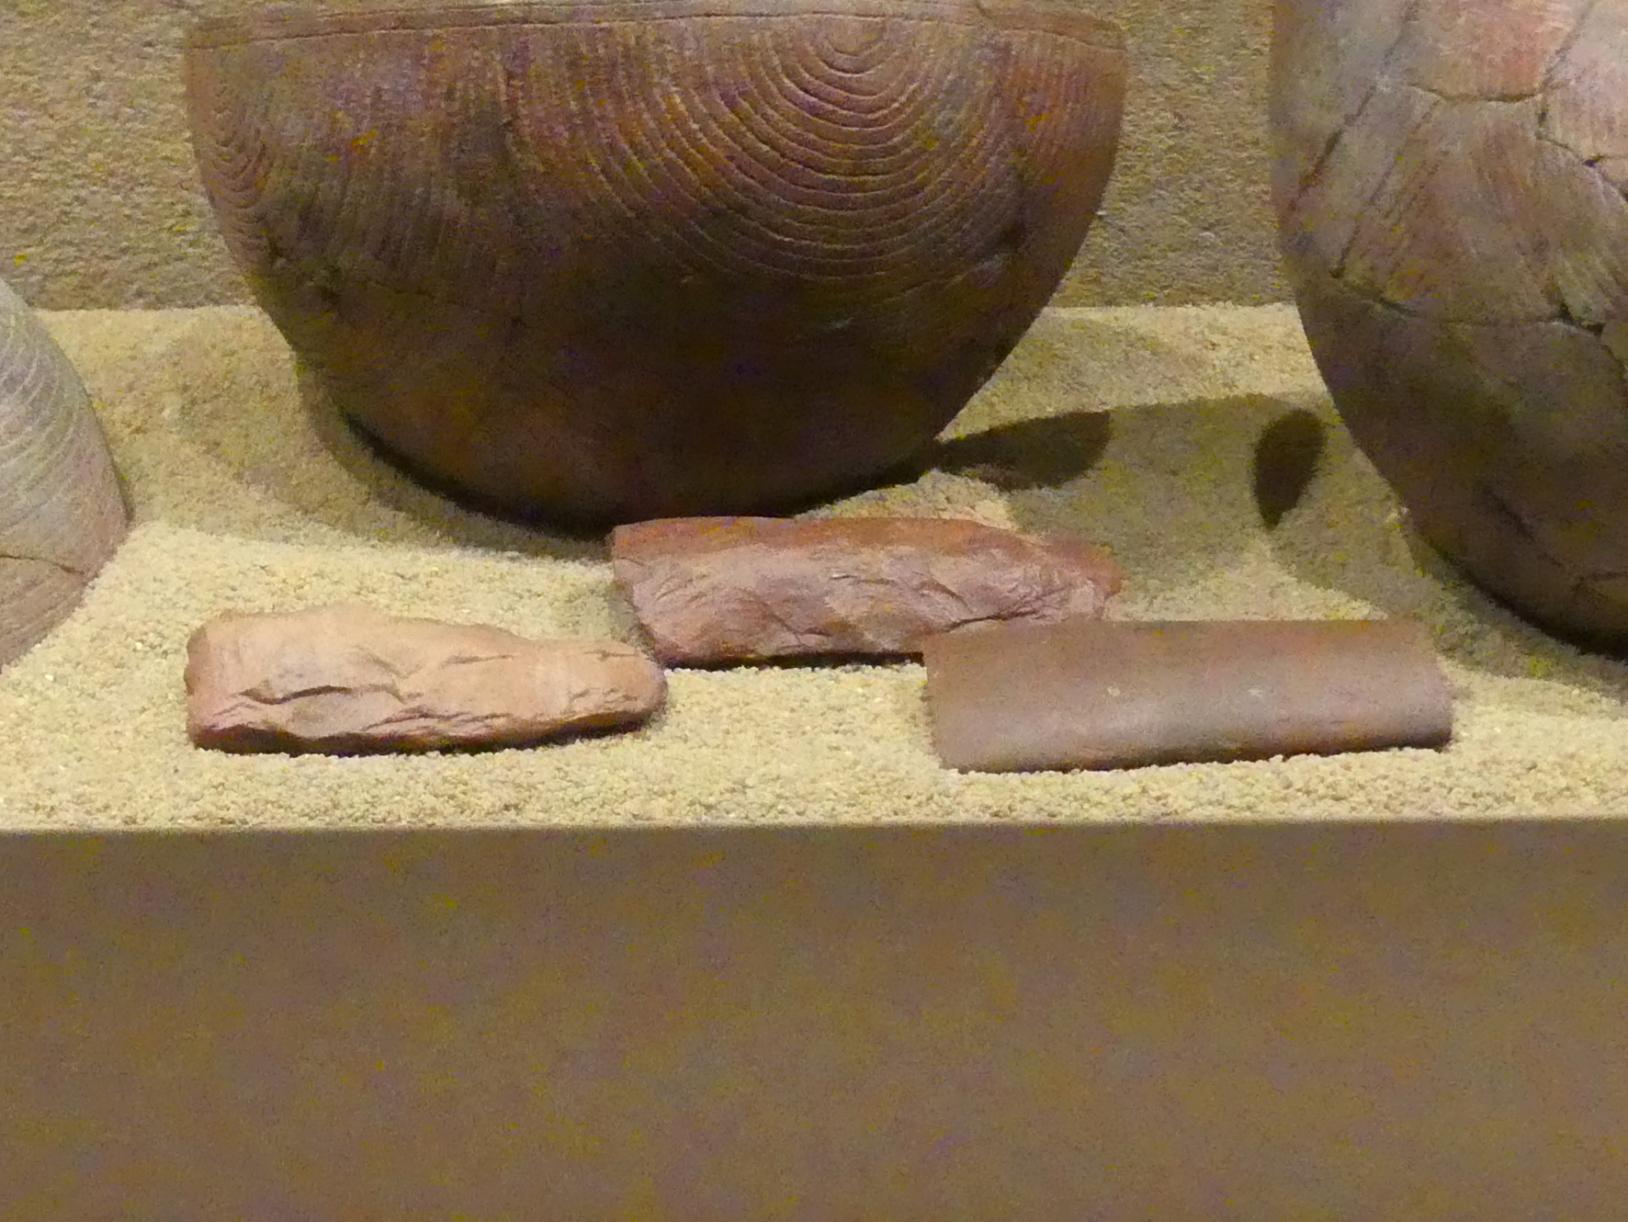 Drei Meißel (Fragmente), Neolithikum (Jungsteinzeit), 5500 - 1700 v. Chr., 4500 v. Chr., Bild 1/2